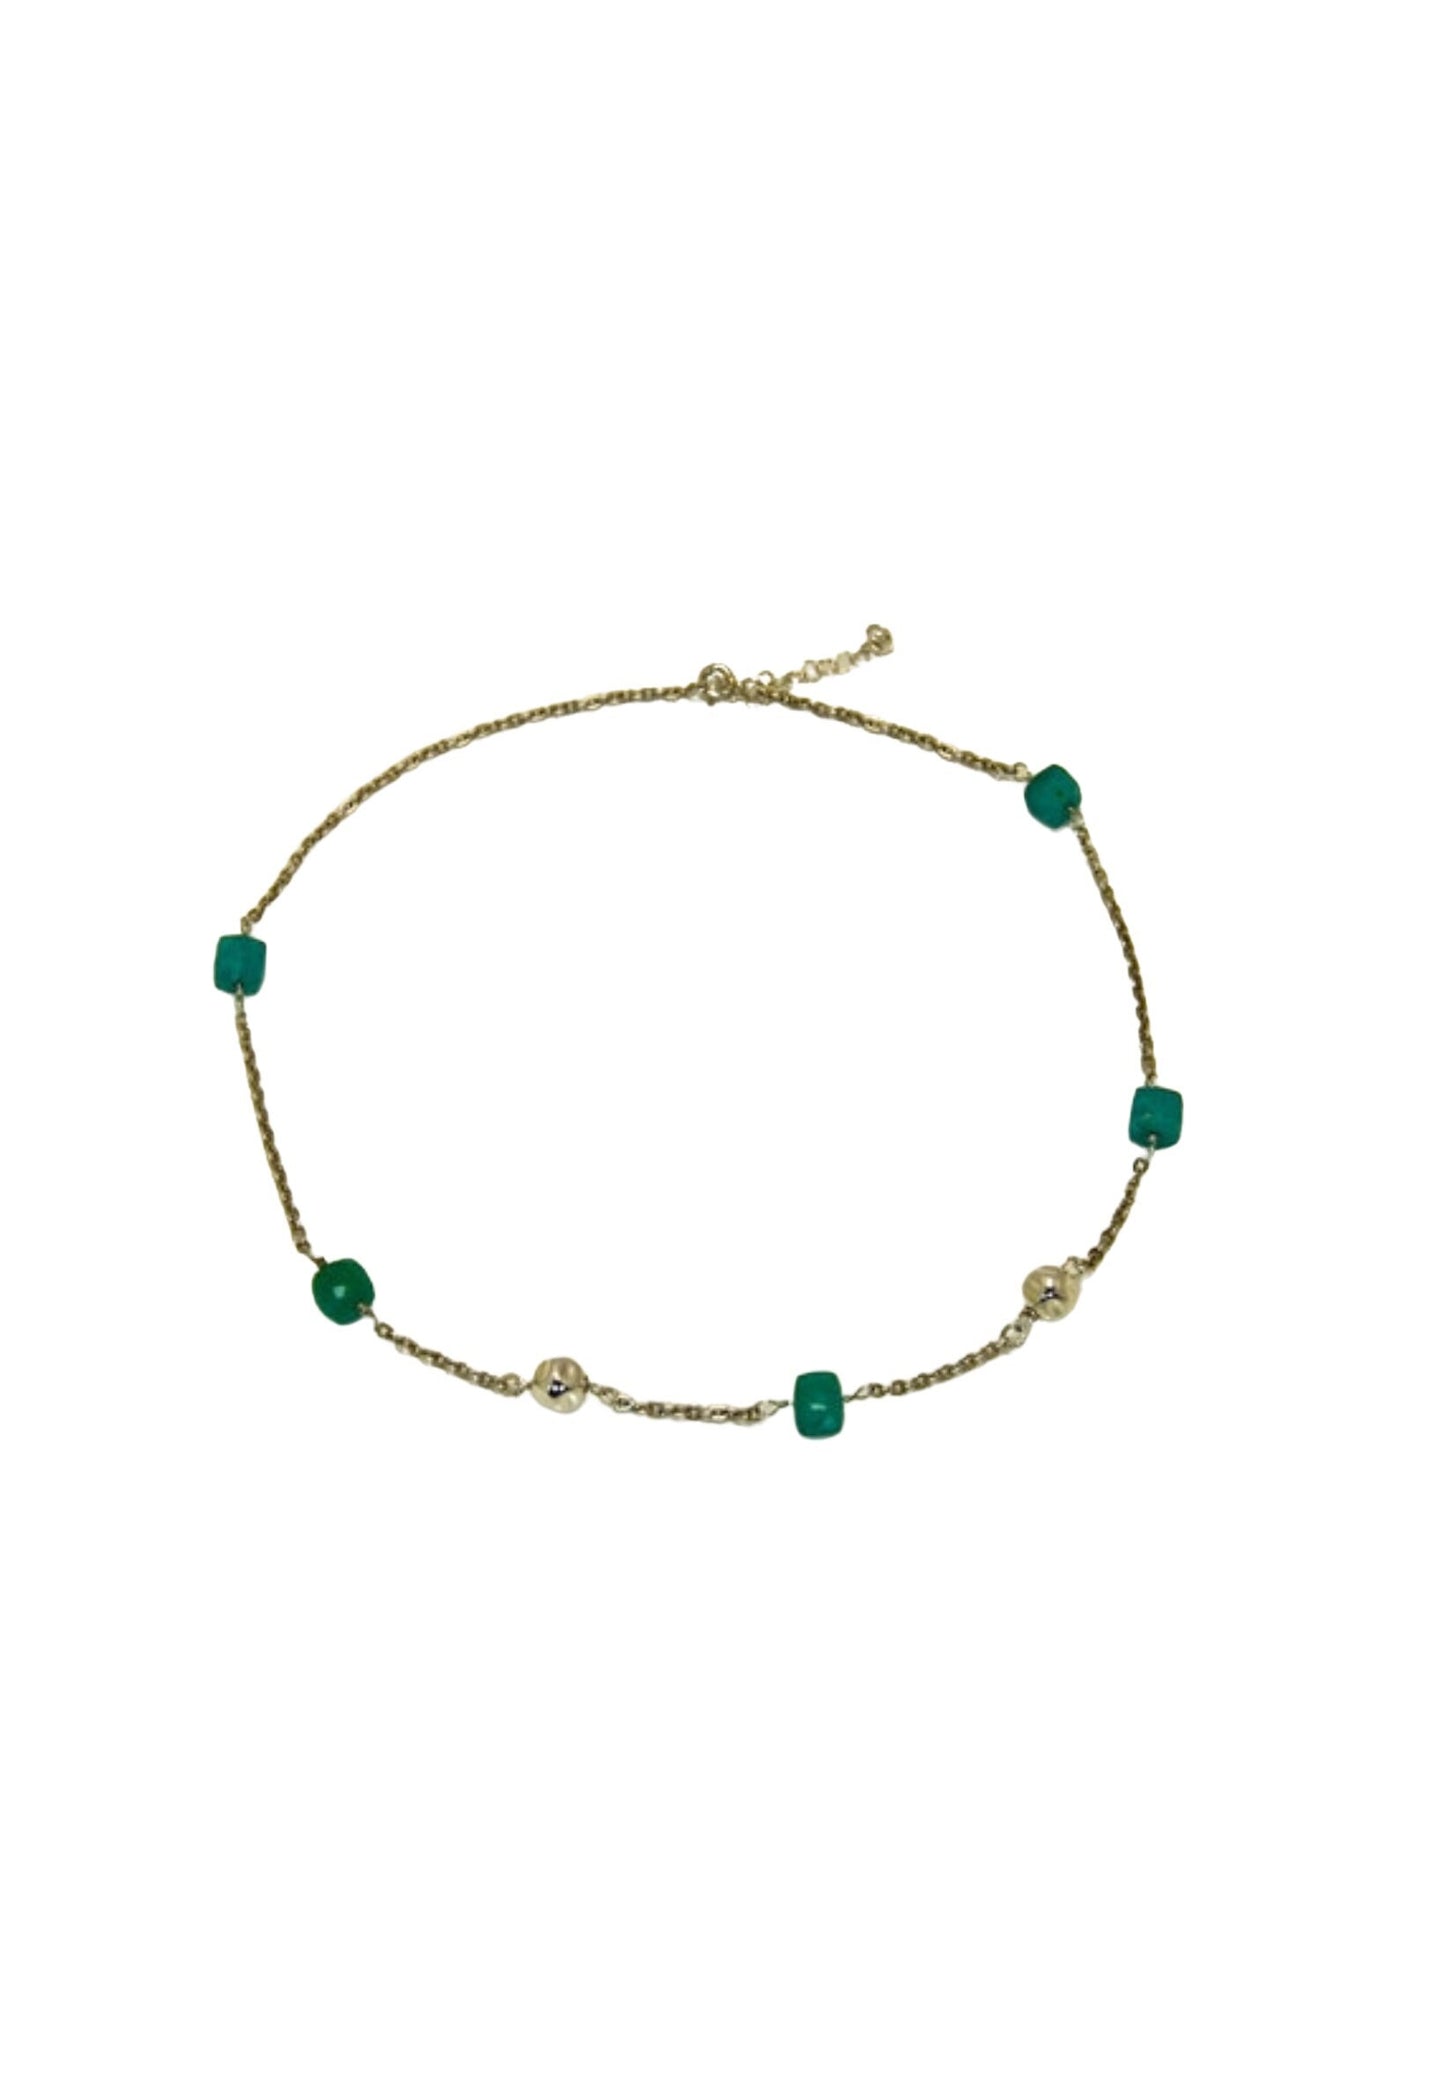 Amazonite Sterling Silver necklace, Aqua Amazonite necklace, Amazonite beads necklace